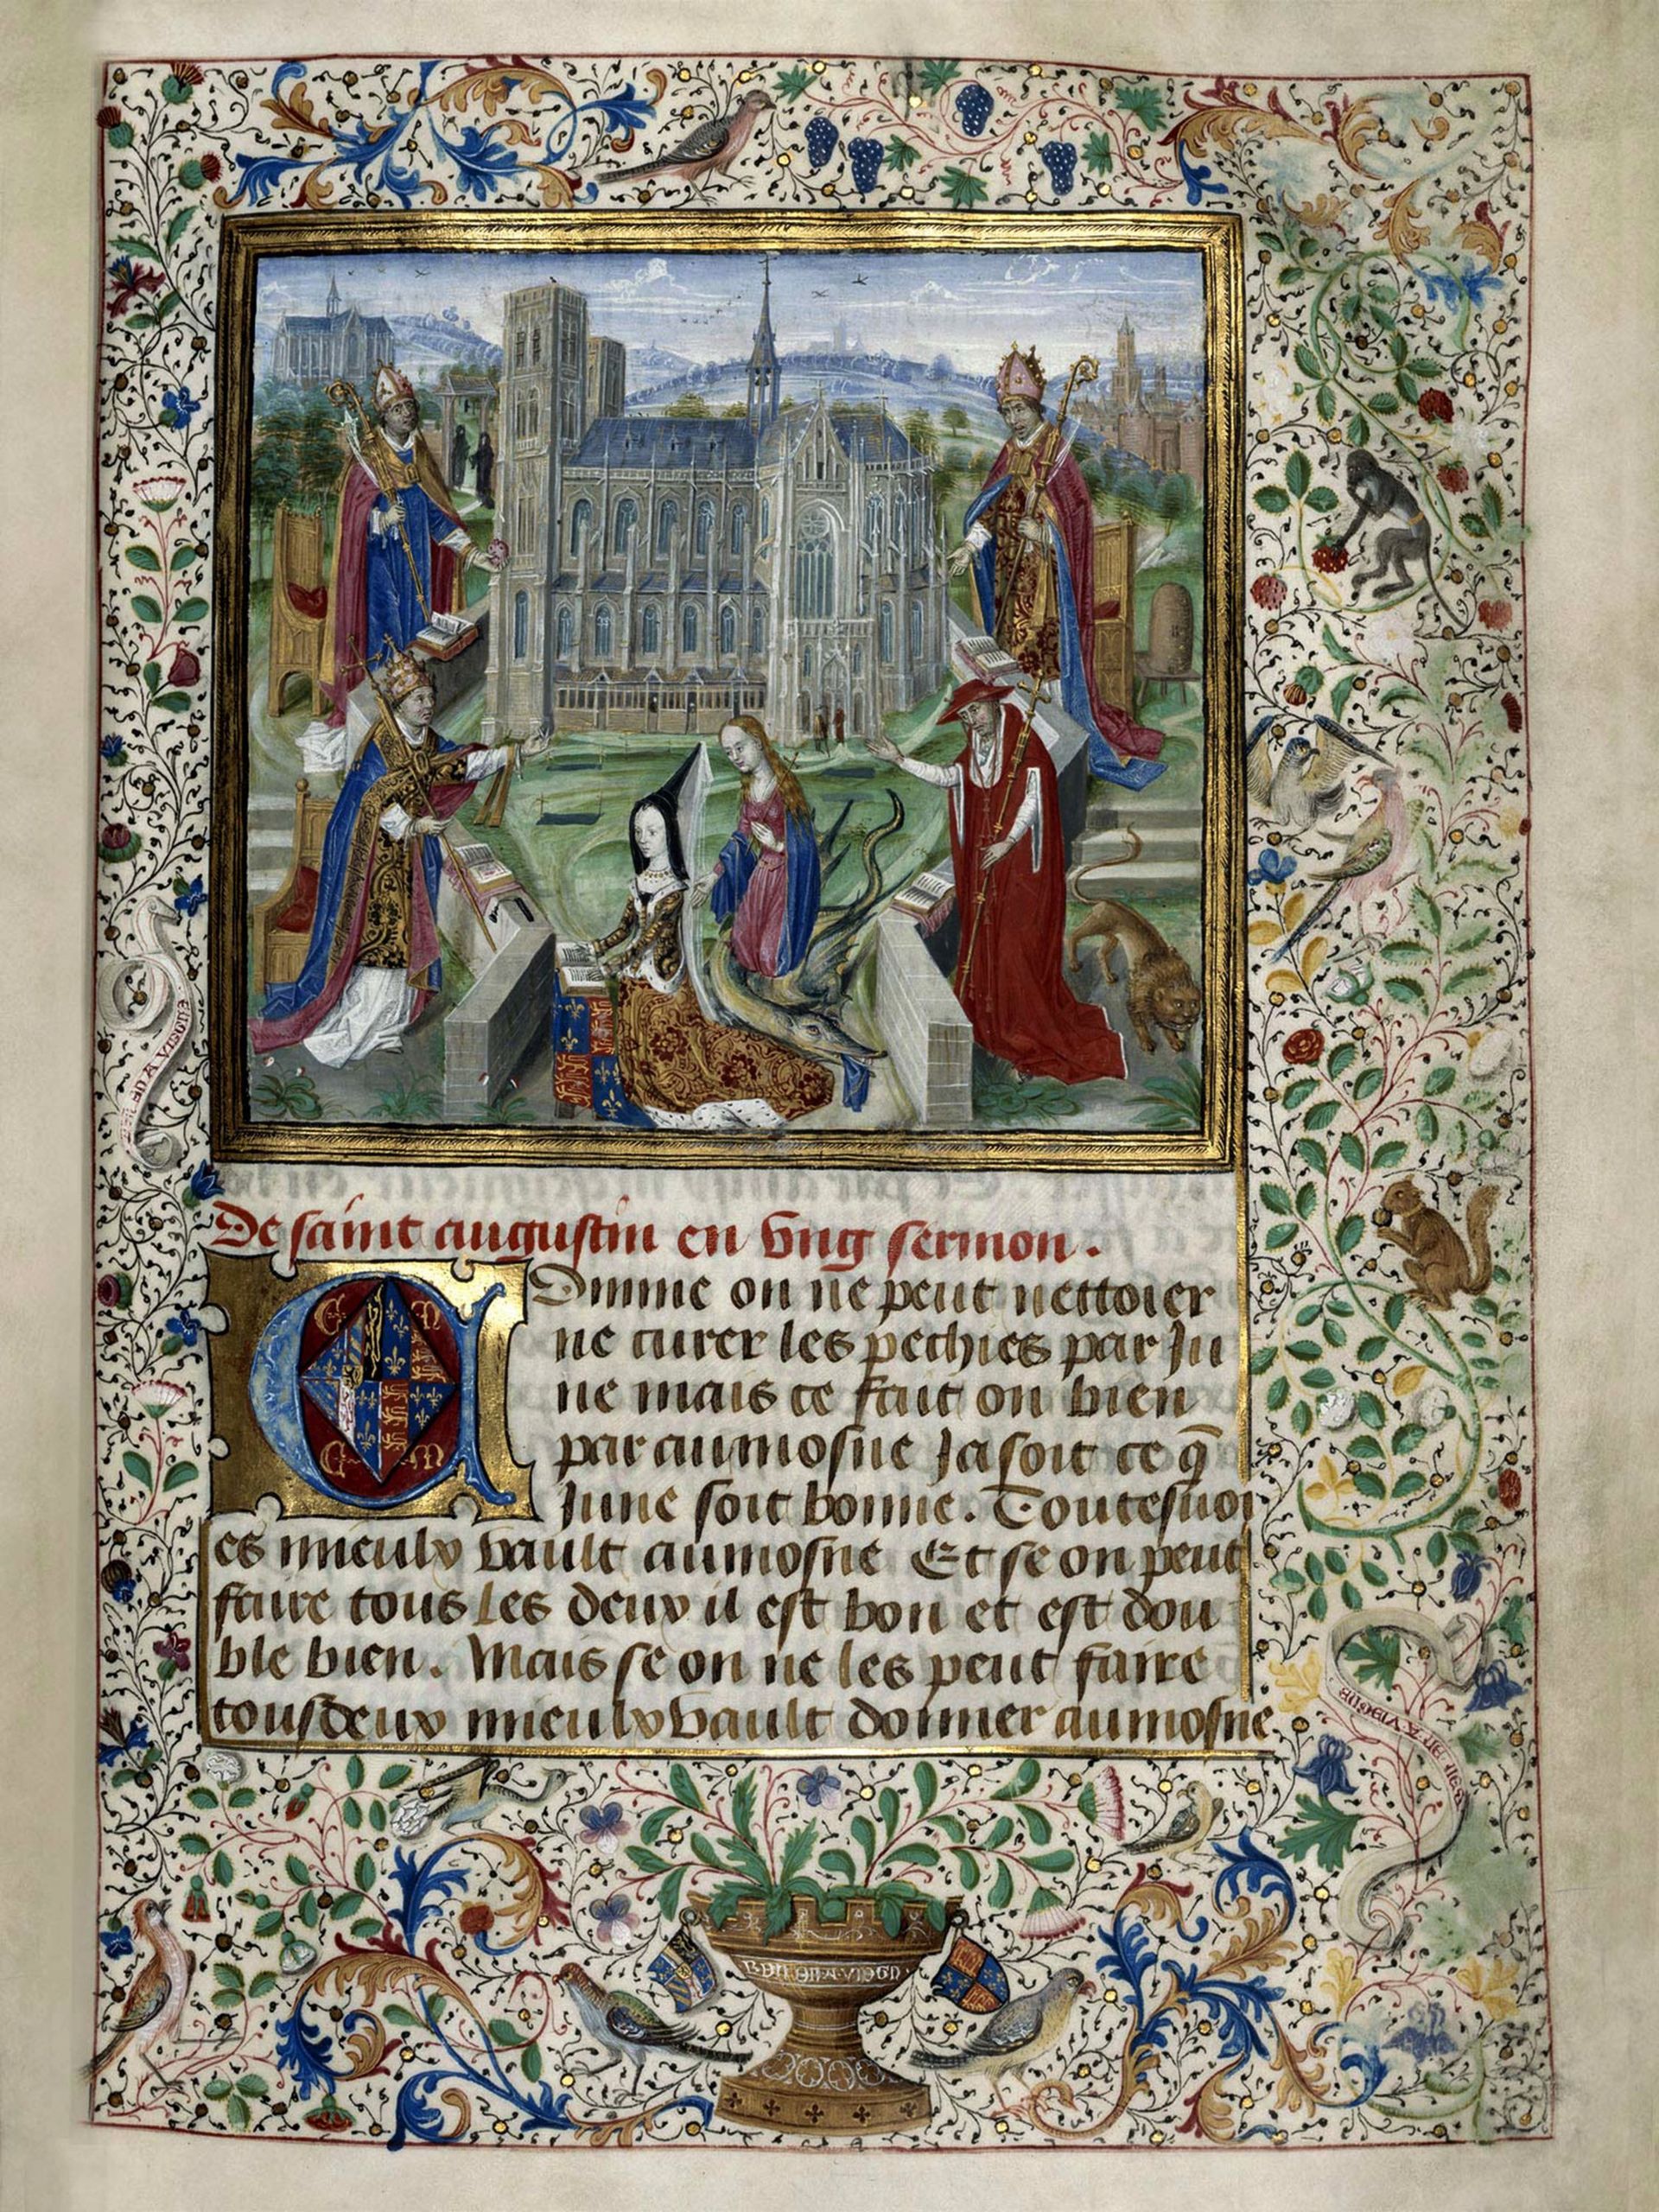 Un folio du bréviaire de Marguerite d’York : on y découvre la 3e épouse de Charles le Téméraire n prière devant la collégiale Sainte-Gudule à Bruxelles. Getty Images